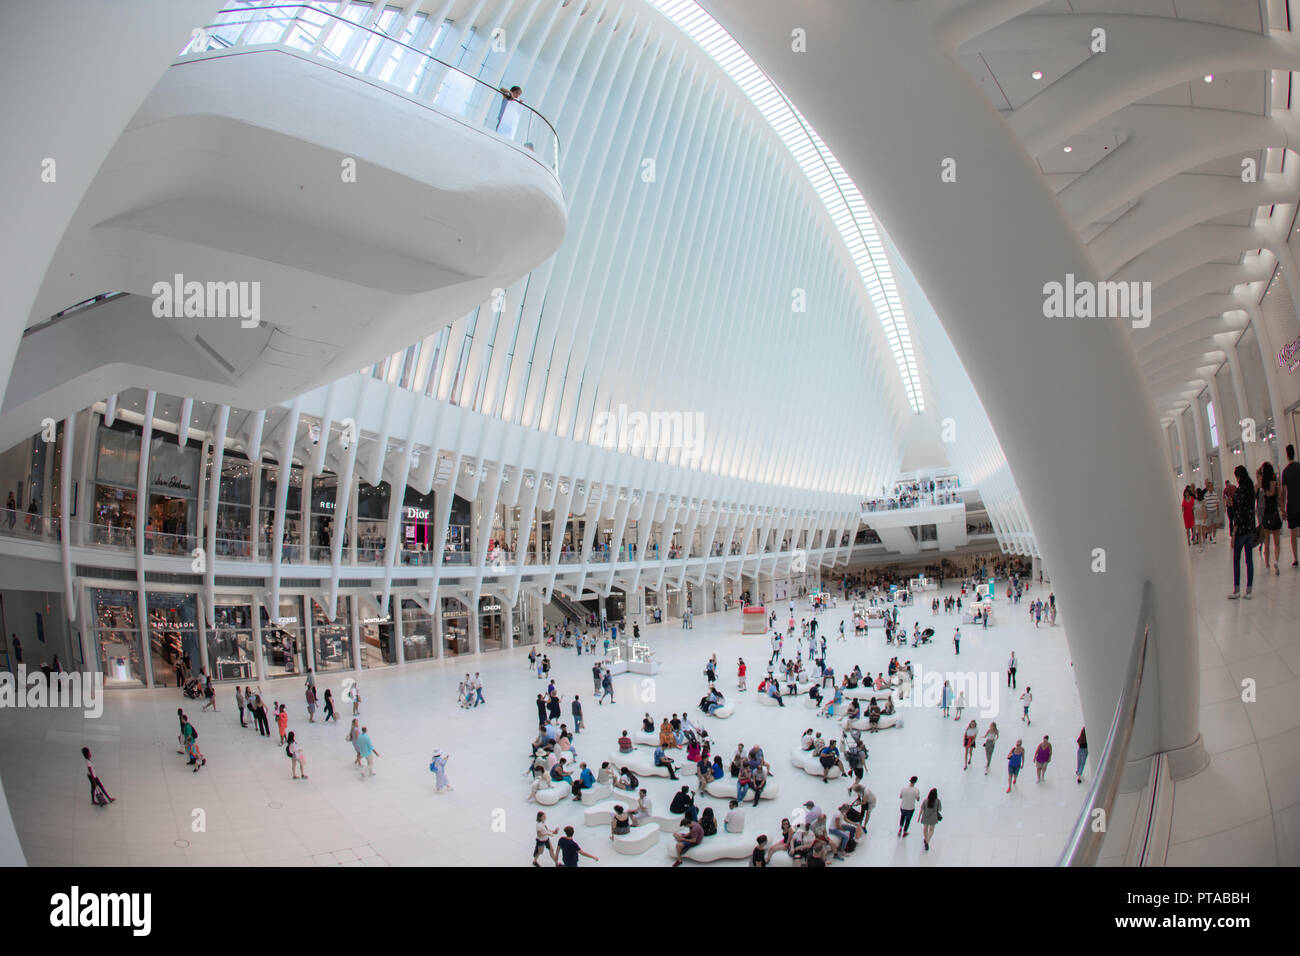 NEW YORK - Août 2018 : l'intérieur du centre commercial Westfield Oculus au cours de journée chargée, World Trade Center Transportation Hub à New York, USA Banque D'Images